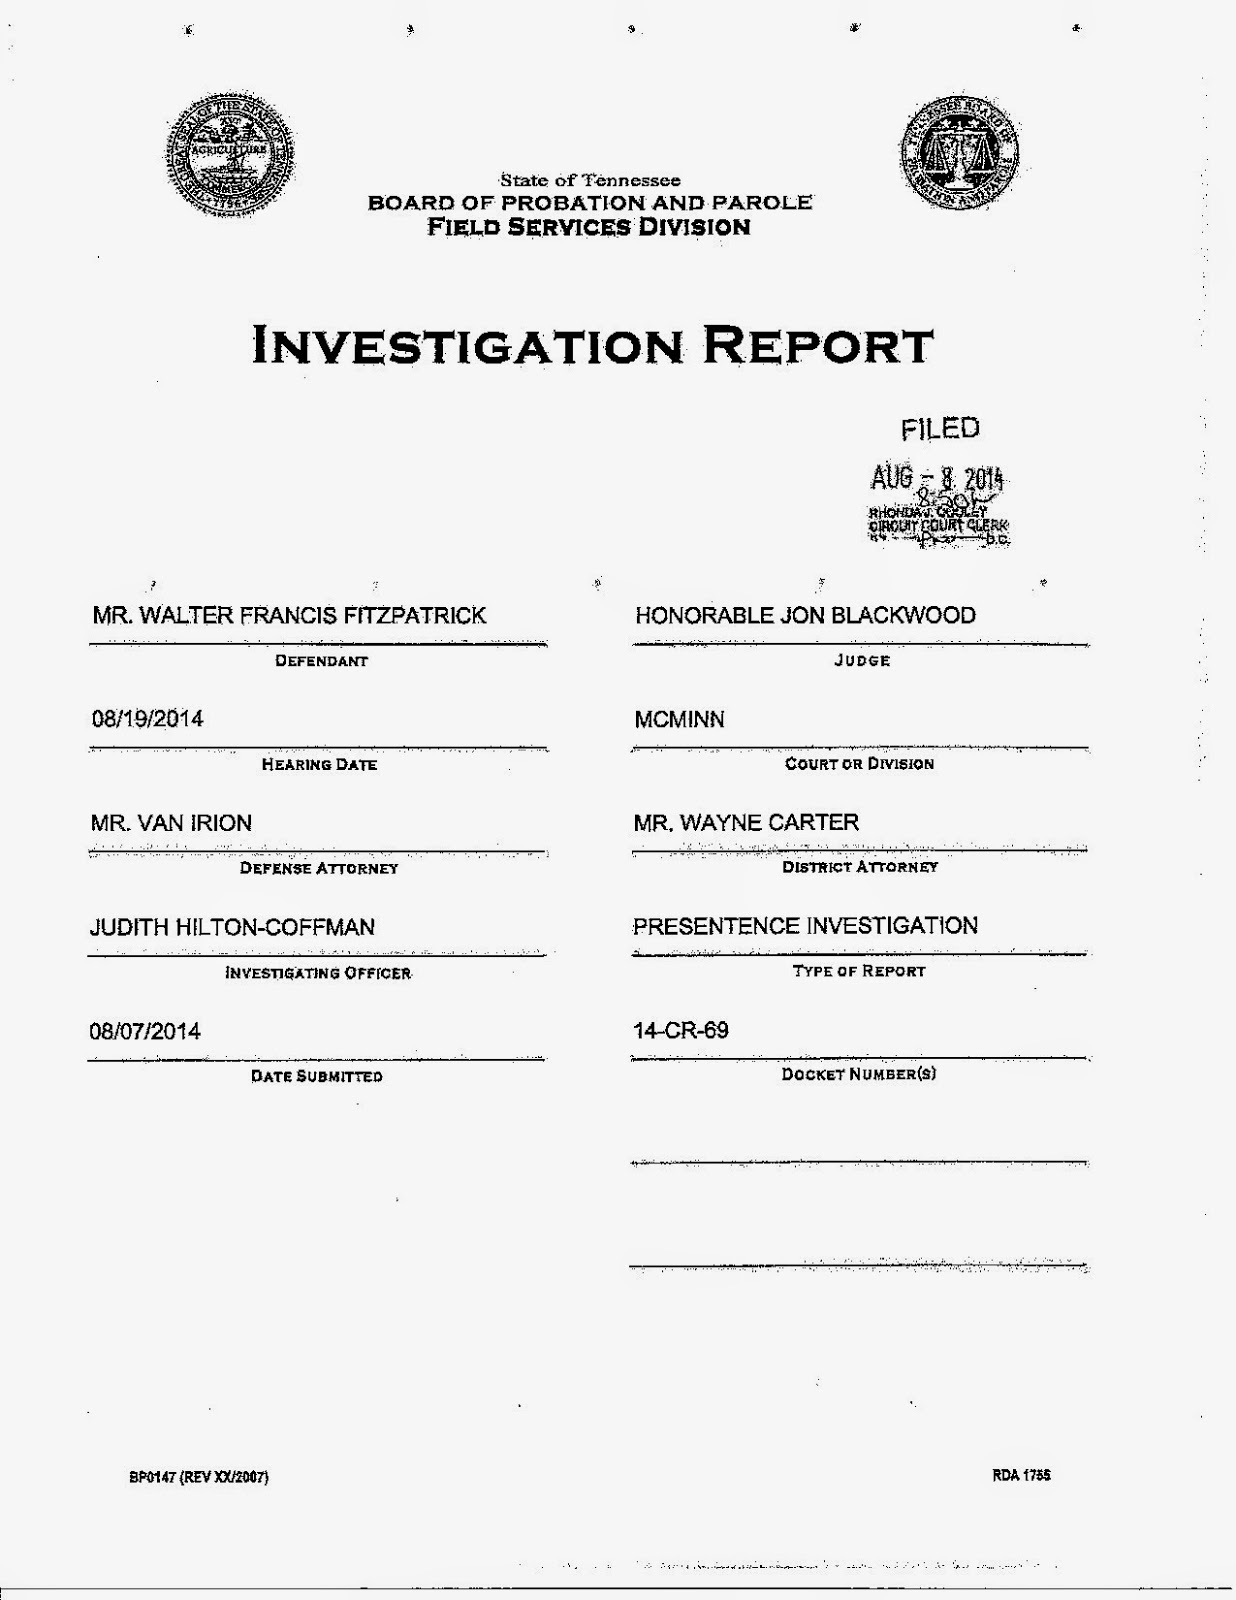  Investigation Report